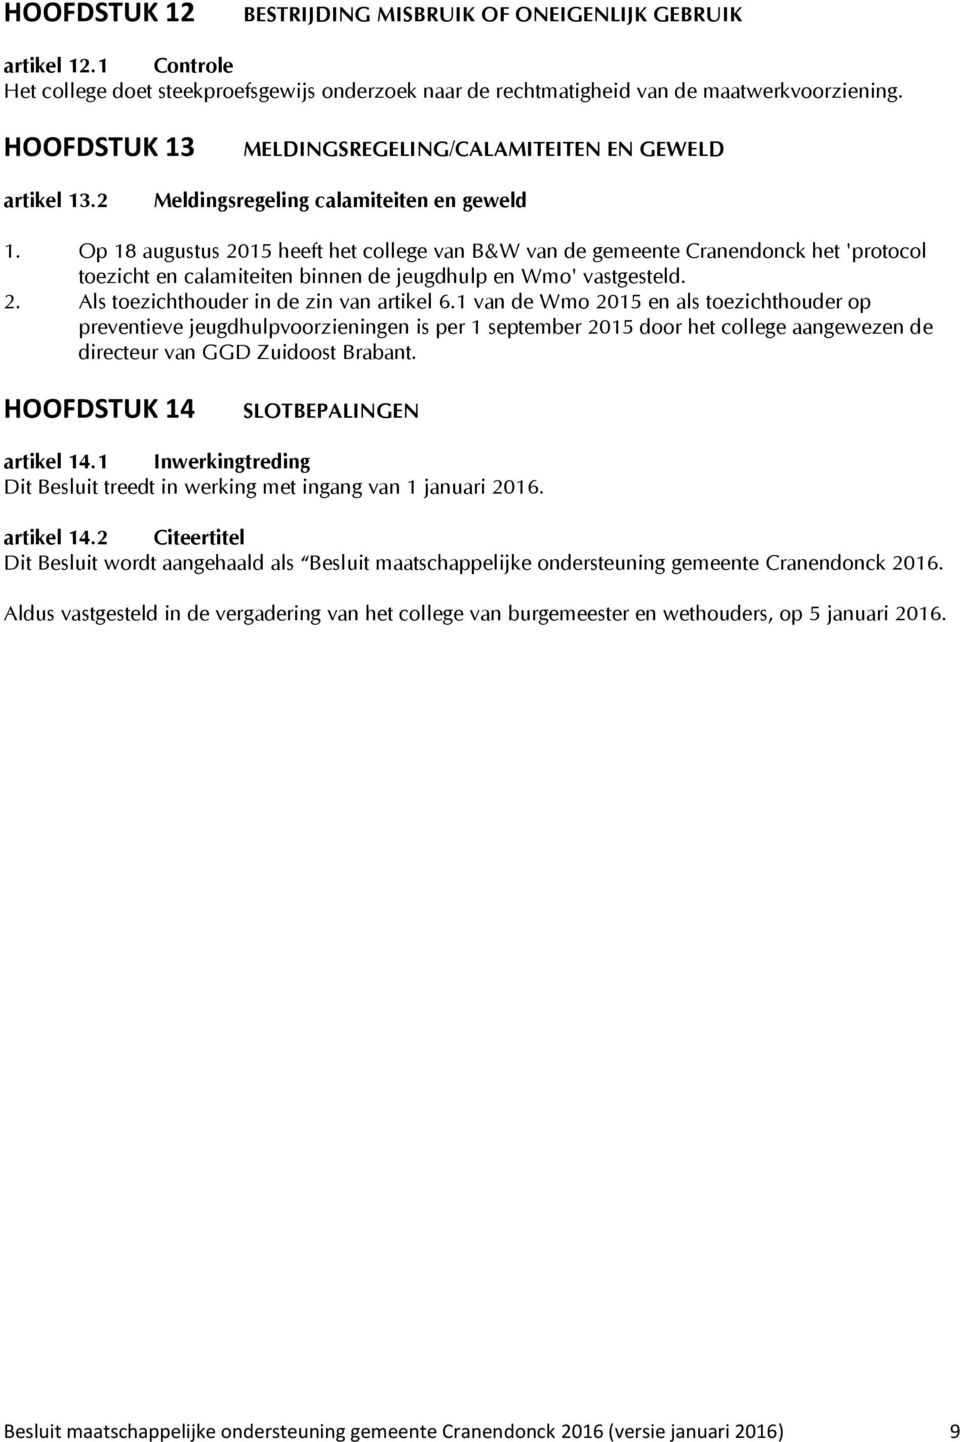 Op 18 augustus 2015 heeft het college van B&W van de gemeente Cranendonck het 'protocol toezicht en calamiteiten binnen de jeugdhulp en Wmo' vastgesteld. 2. Als toezichthouder in de zin van artikel 6.